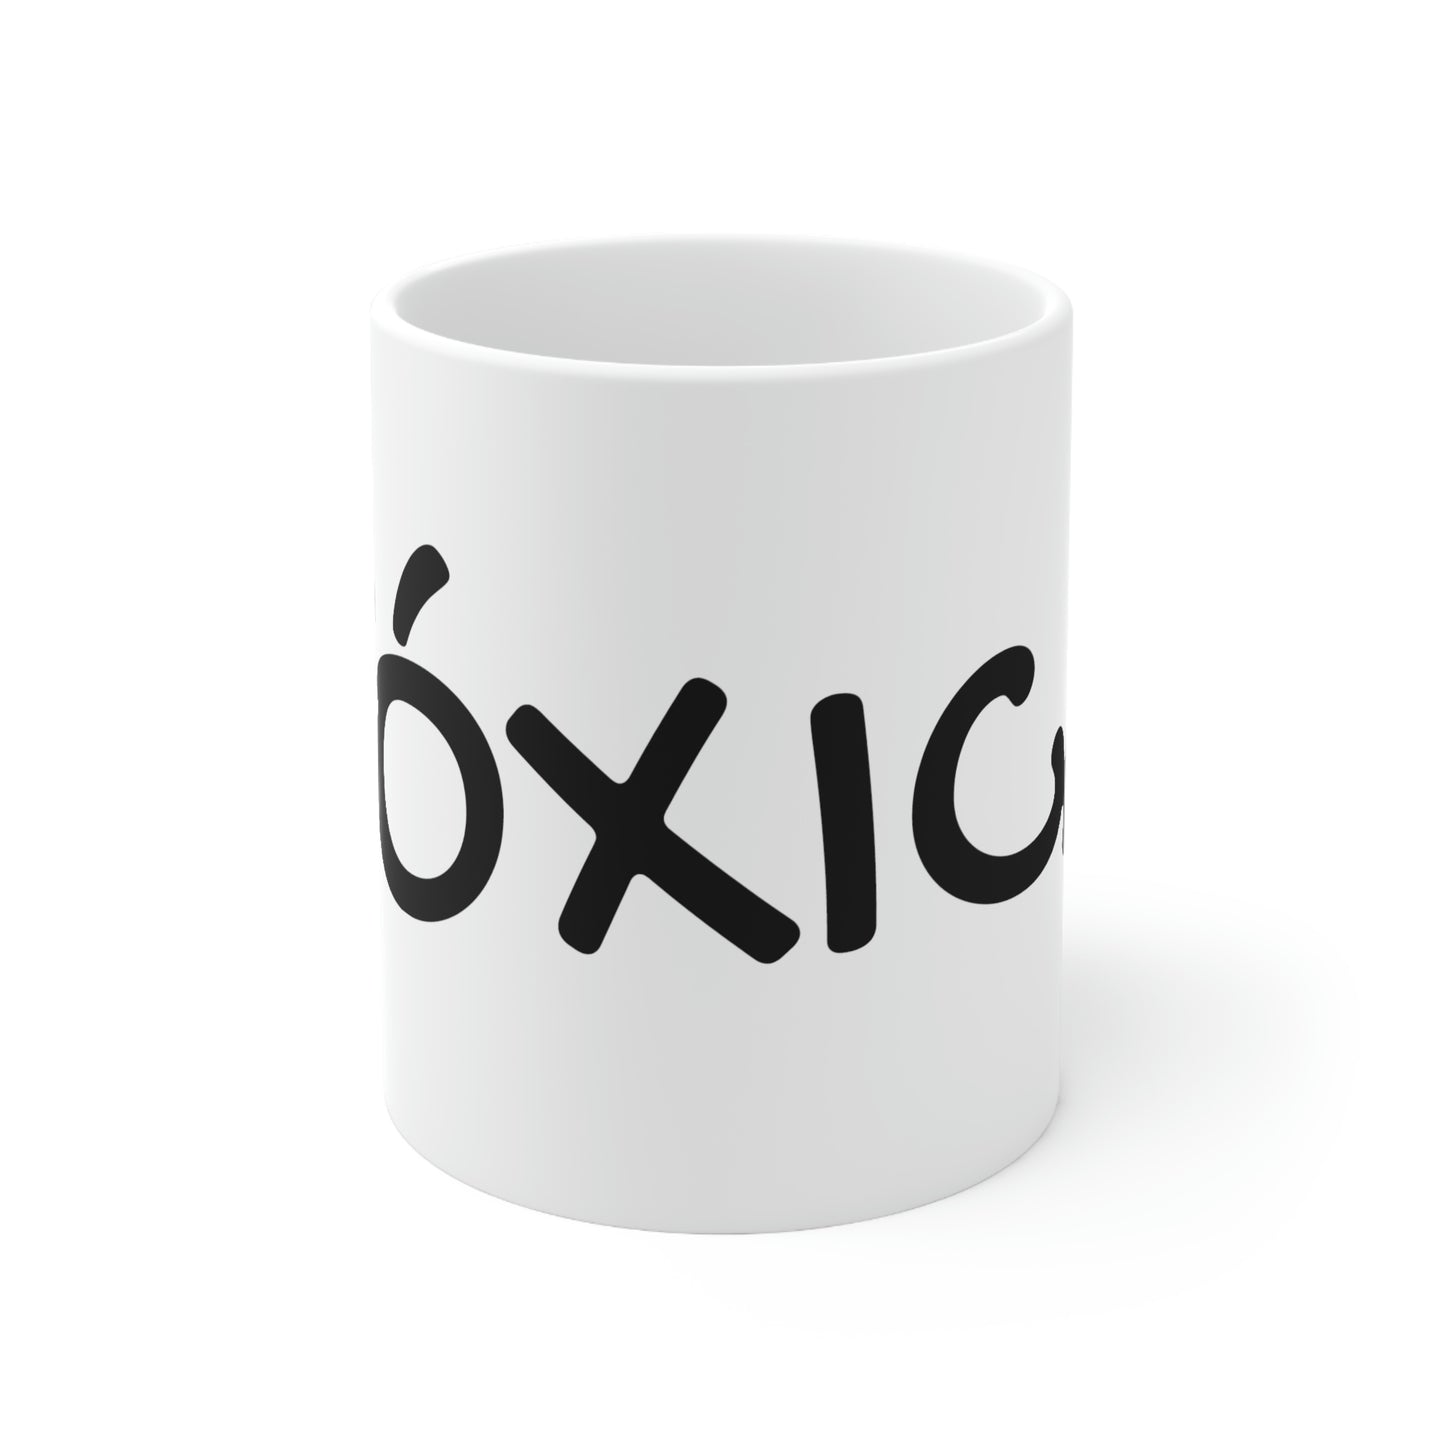 TOXICA Ceramic Mug 11oz